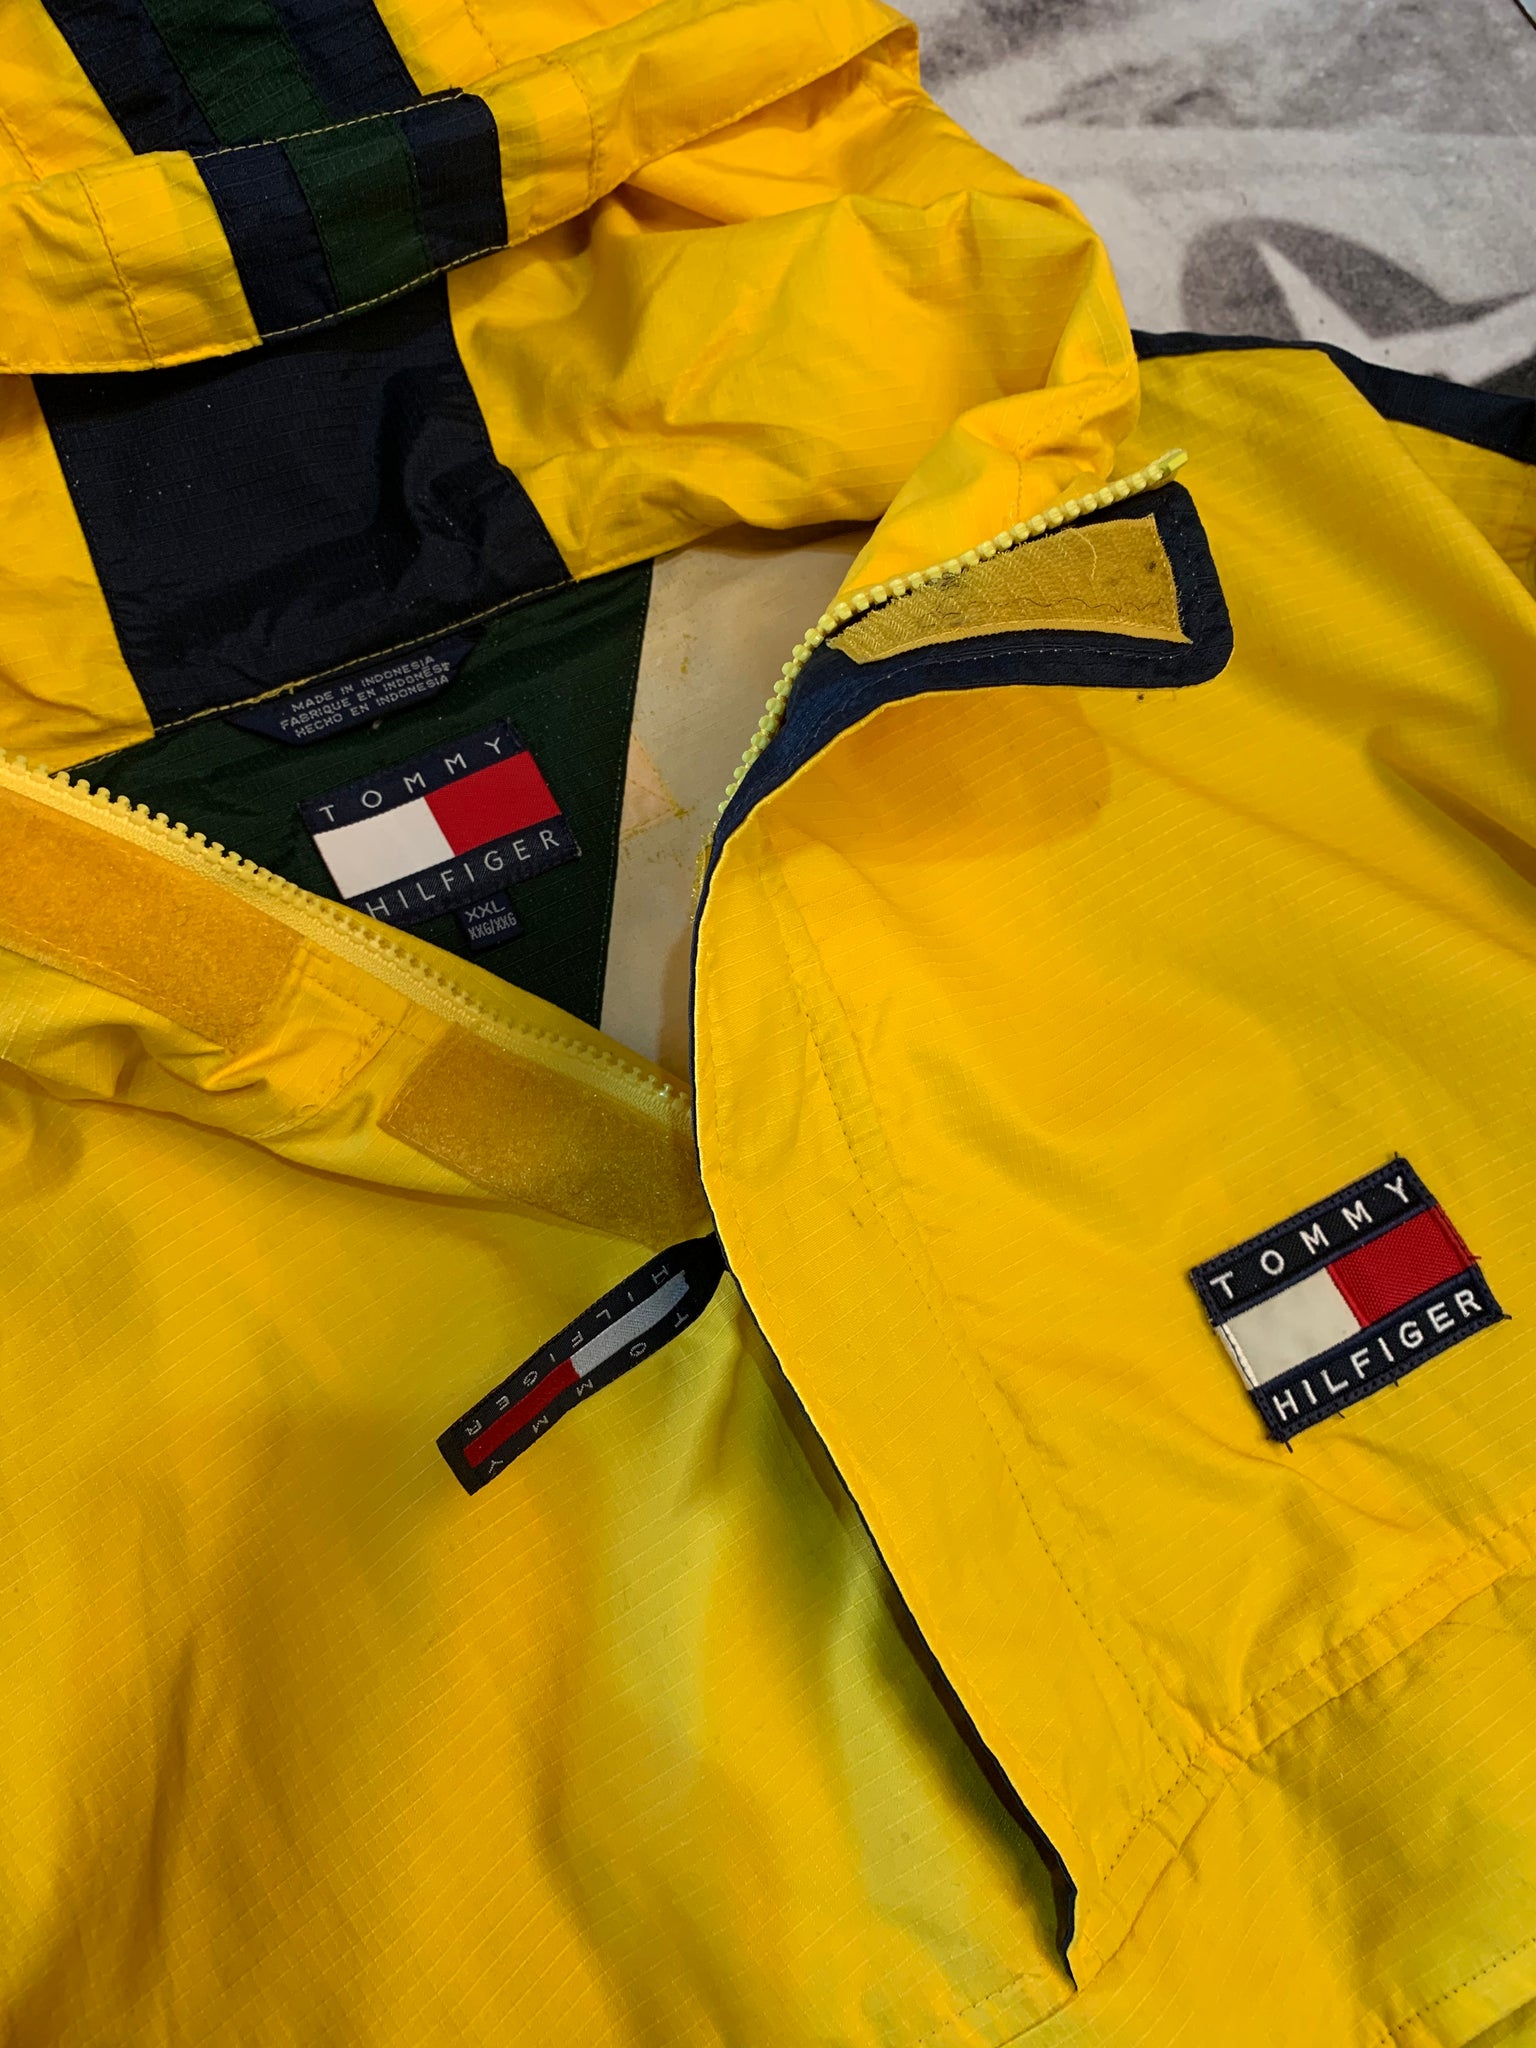 hilfiger jacket yellow